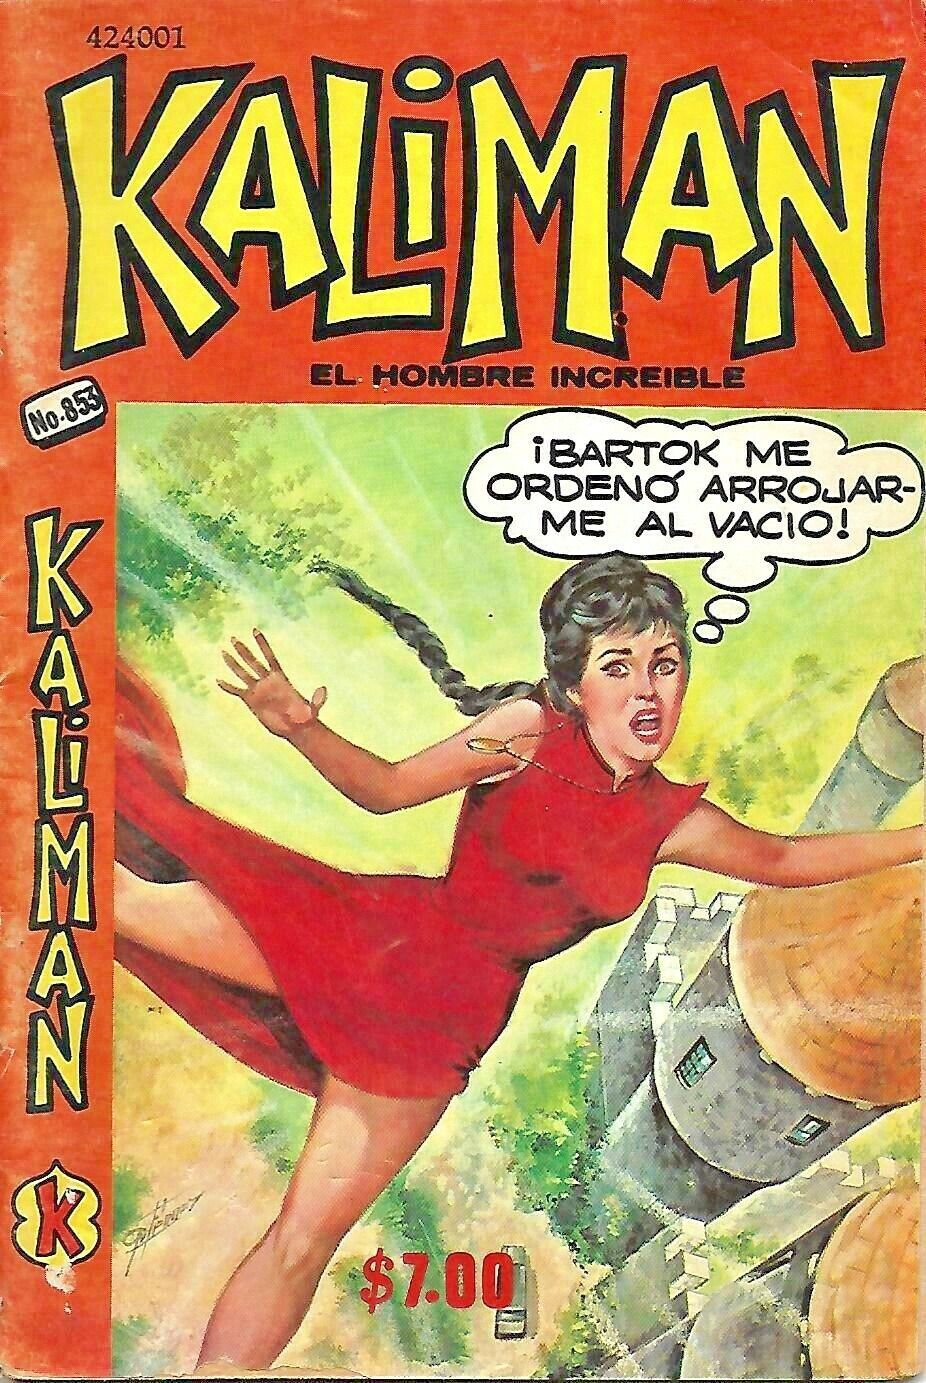 Kaliman El Hombre Increible #853 - Abril 2, 1982 - Mexico 